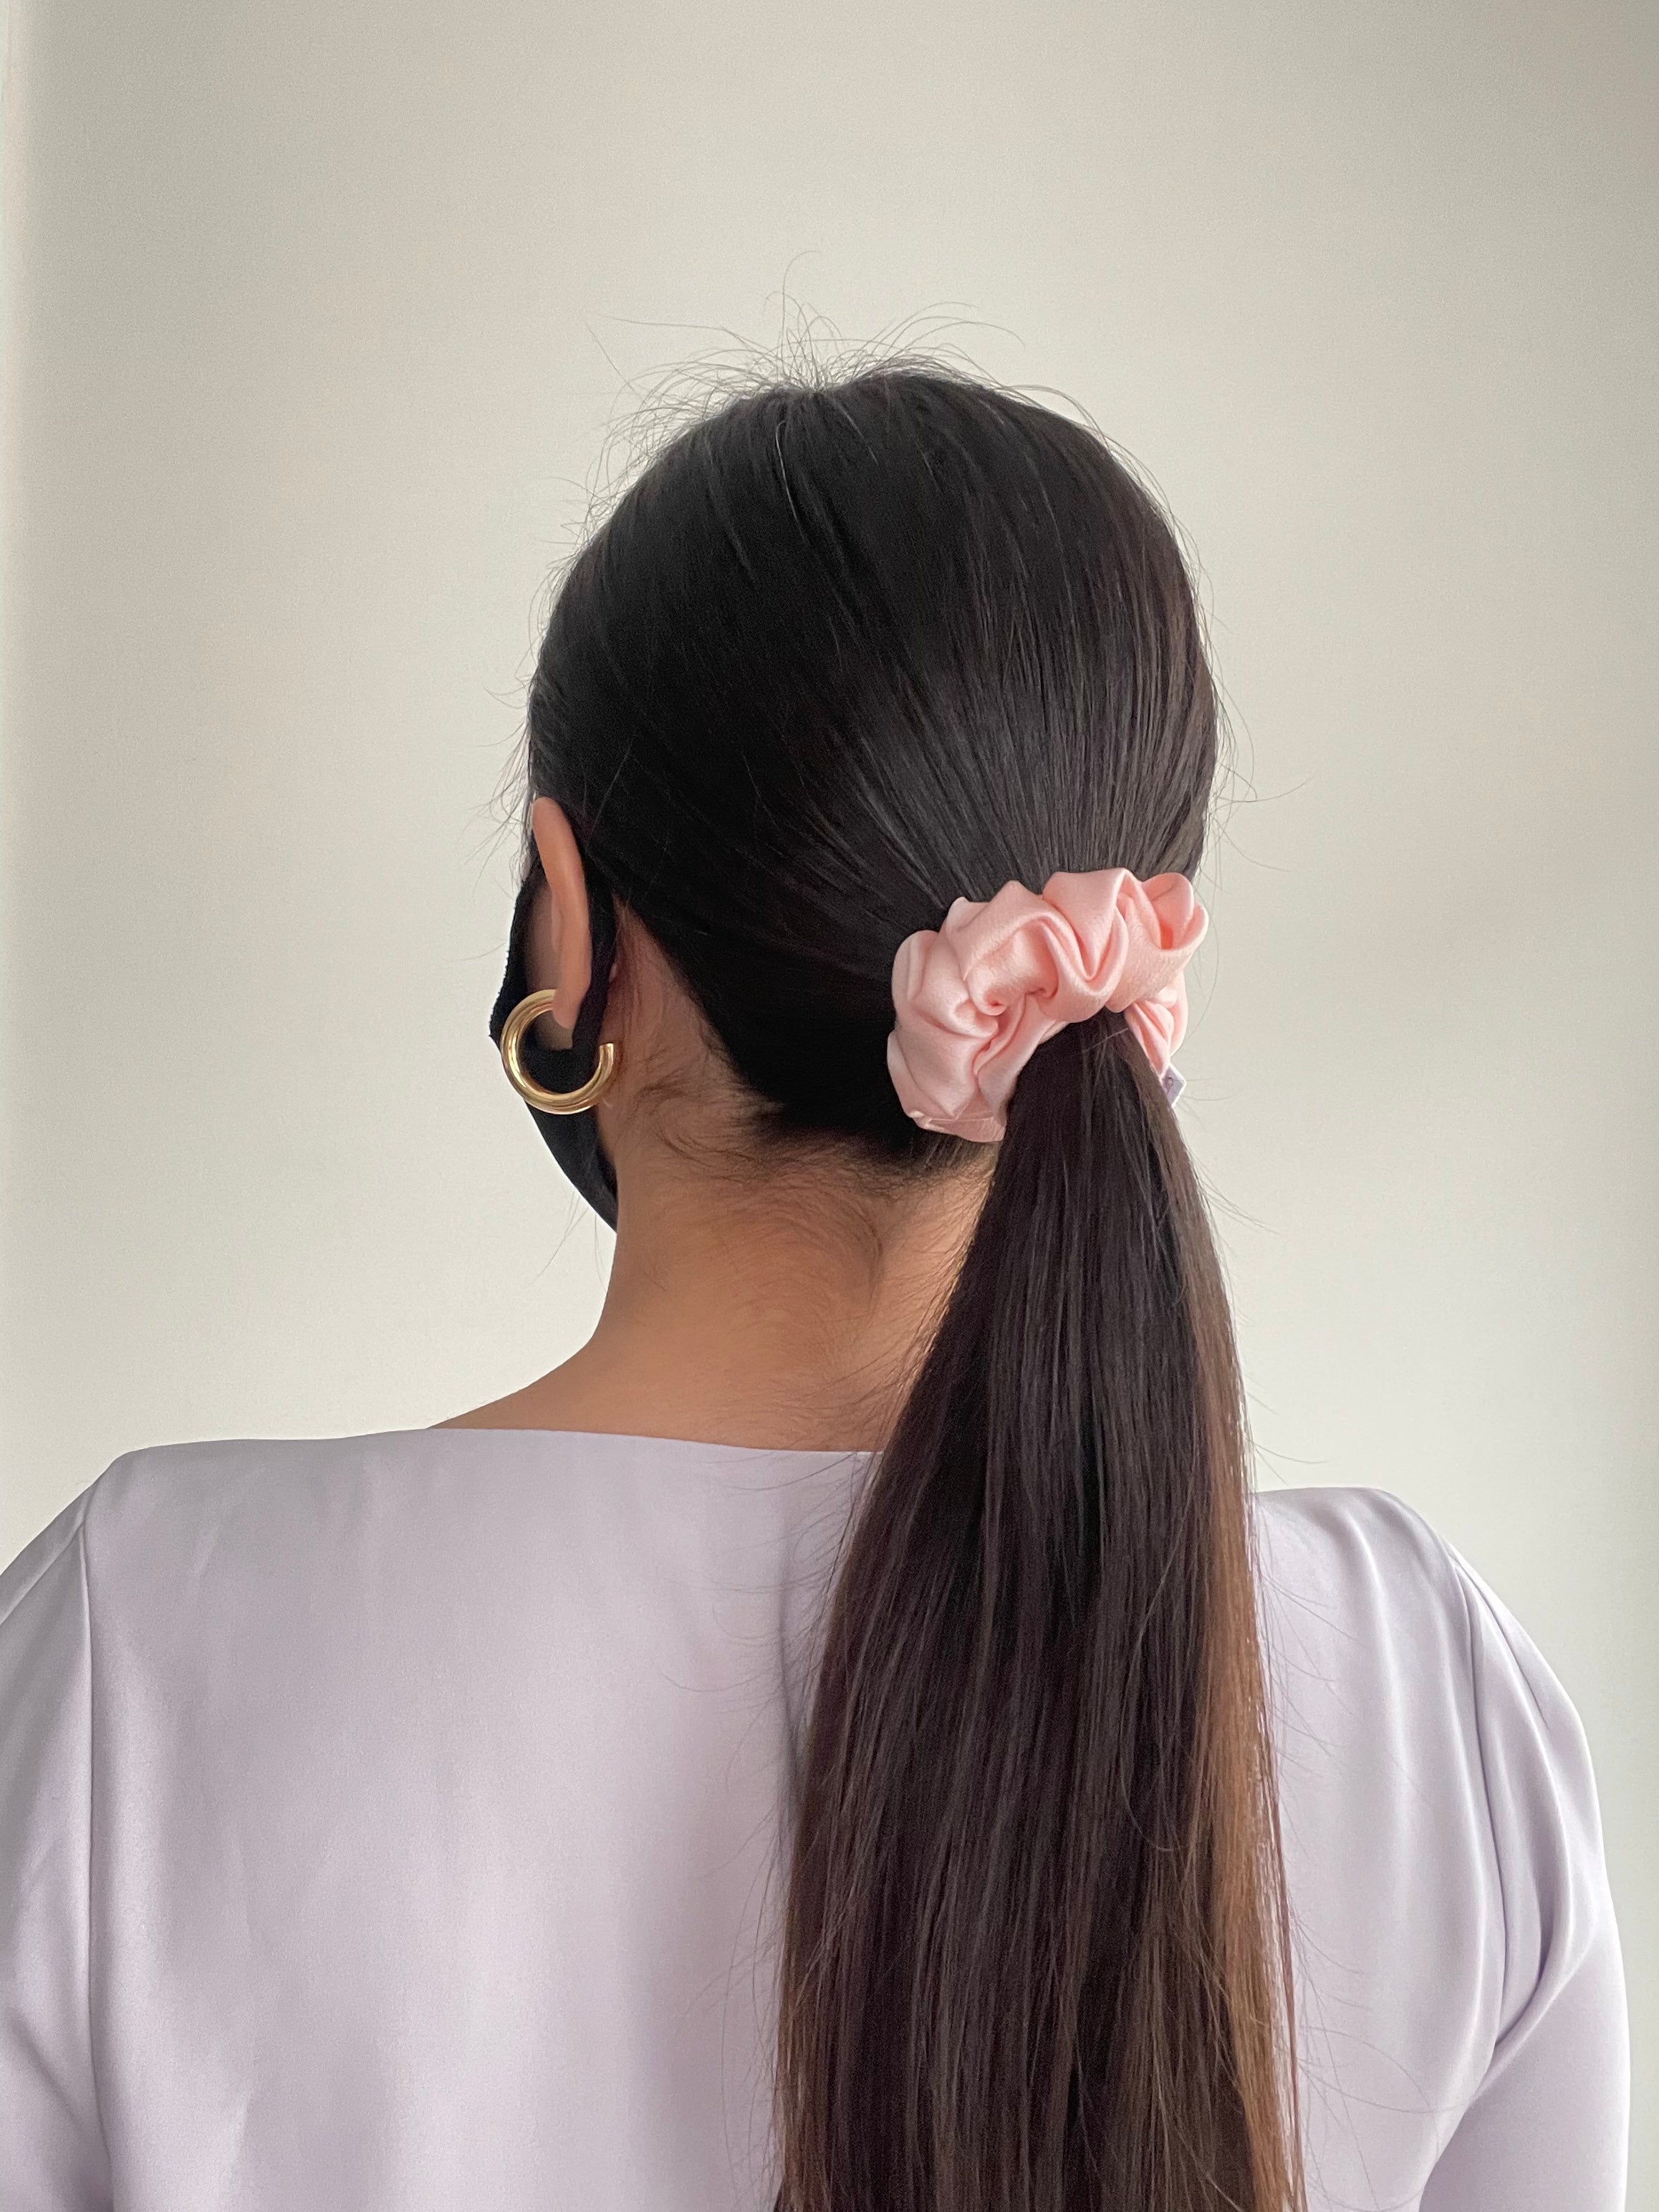 Thin pink silk scrunchie in model's ponytail